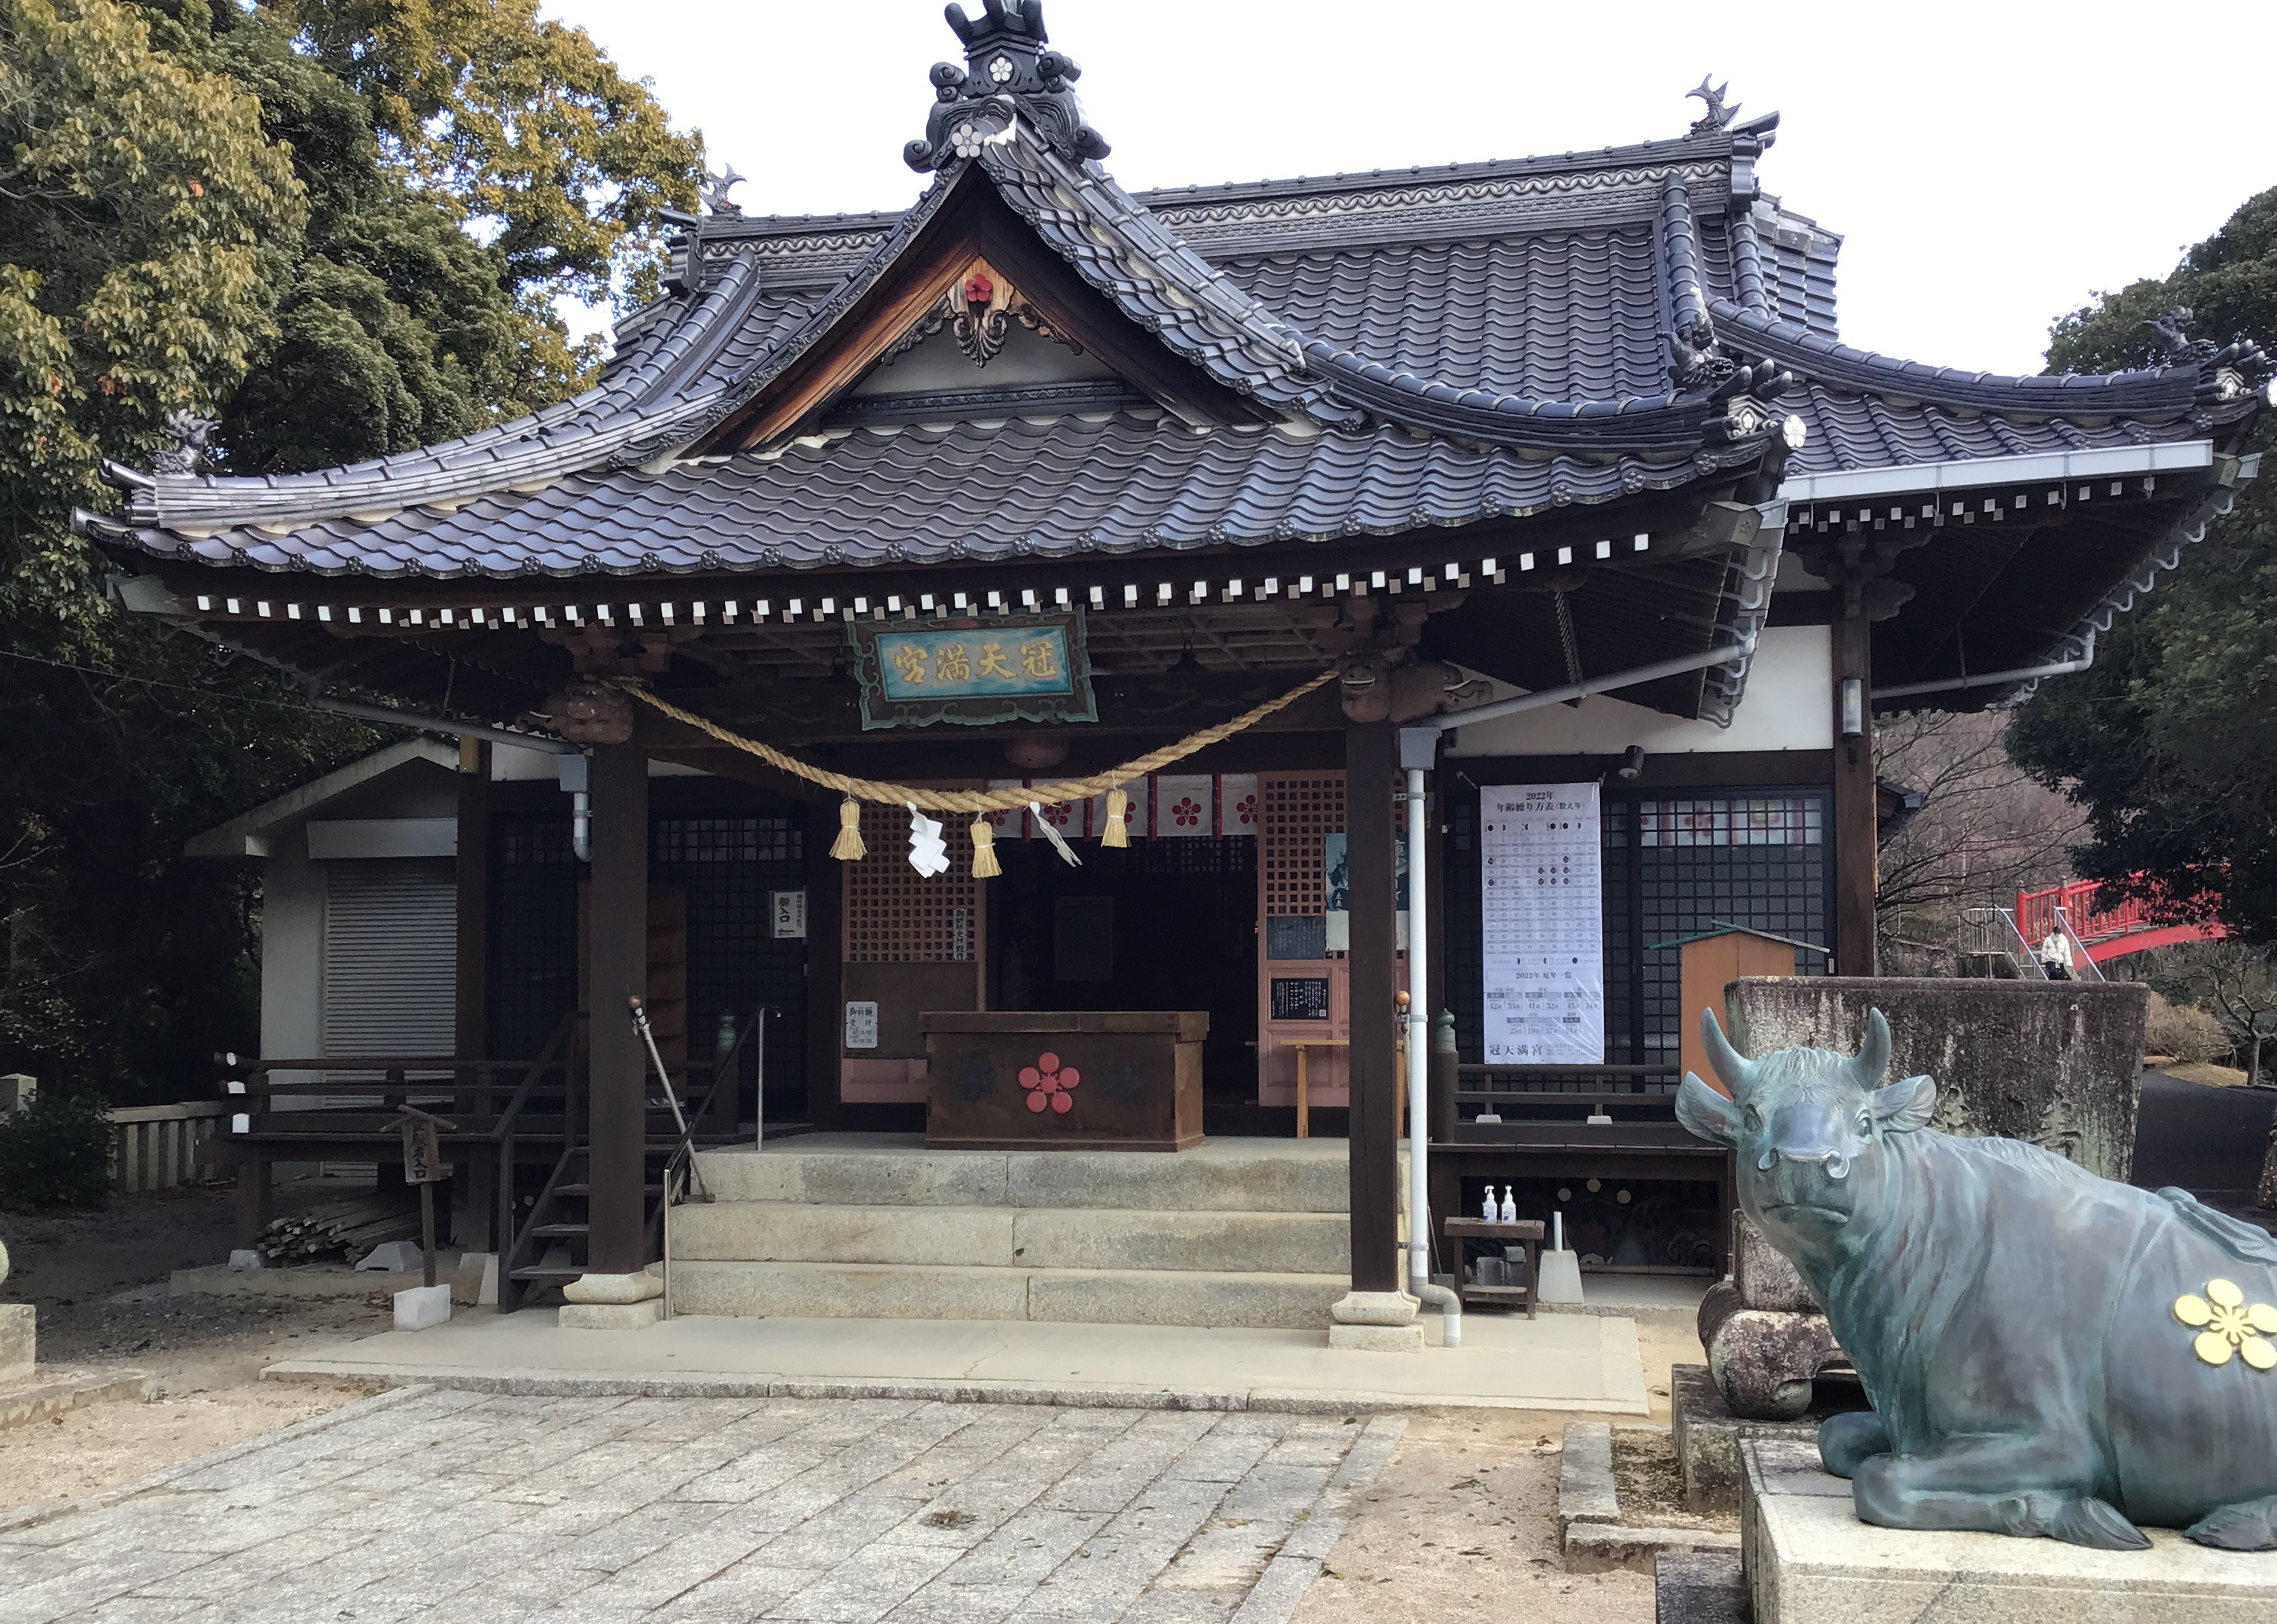 A shinto shrine